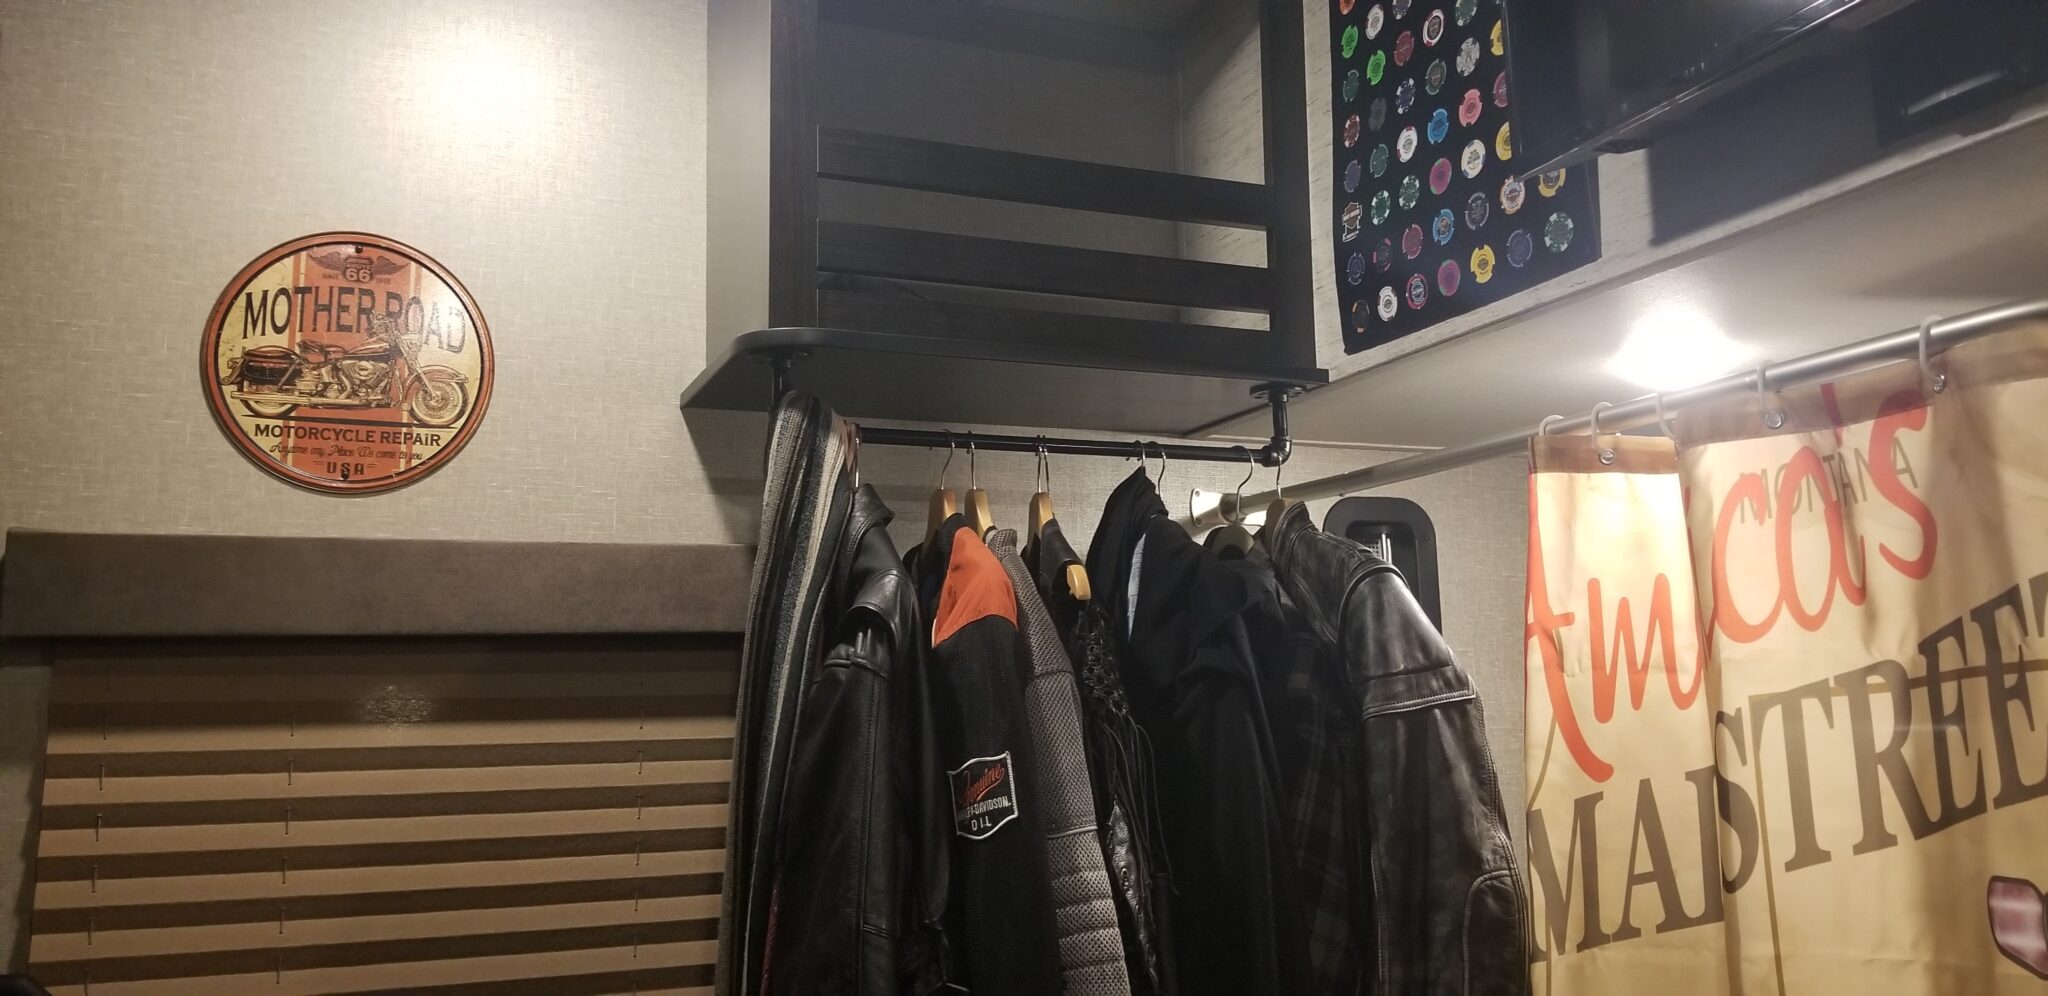 Coat hanger rack with jackets, vests, in garage